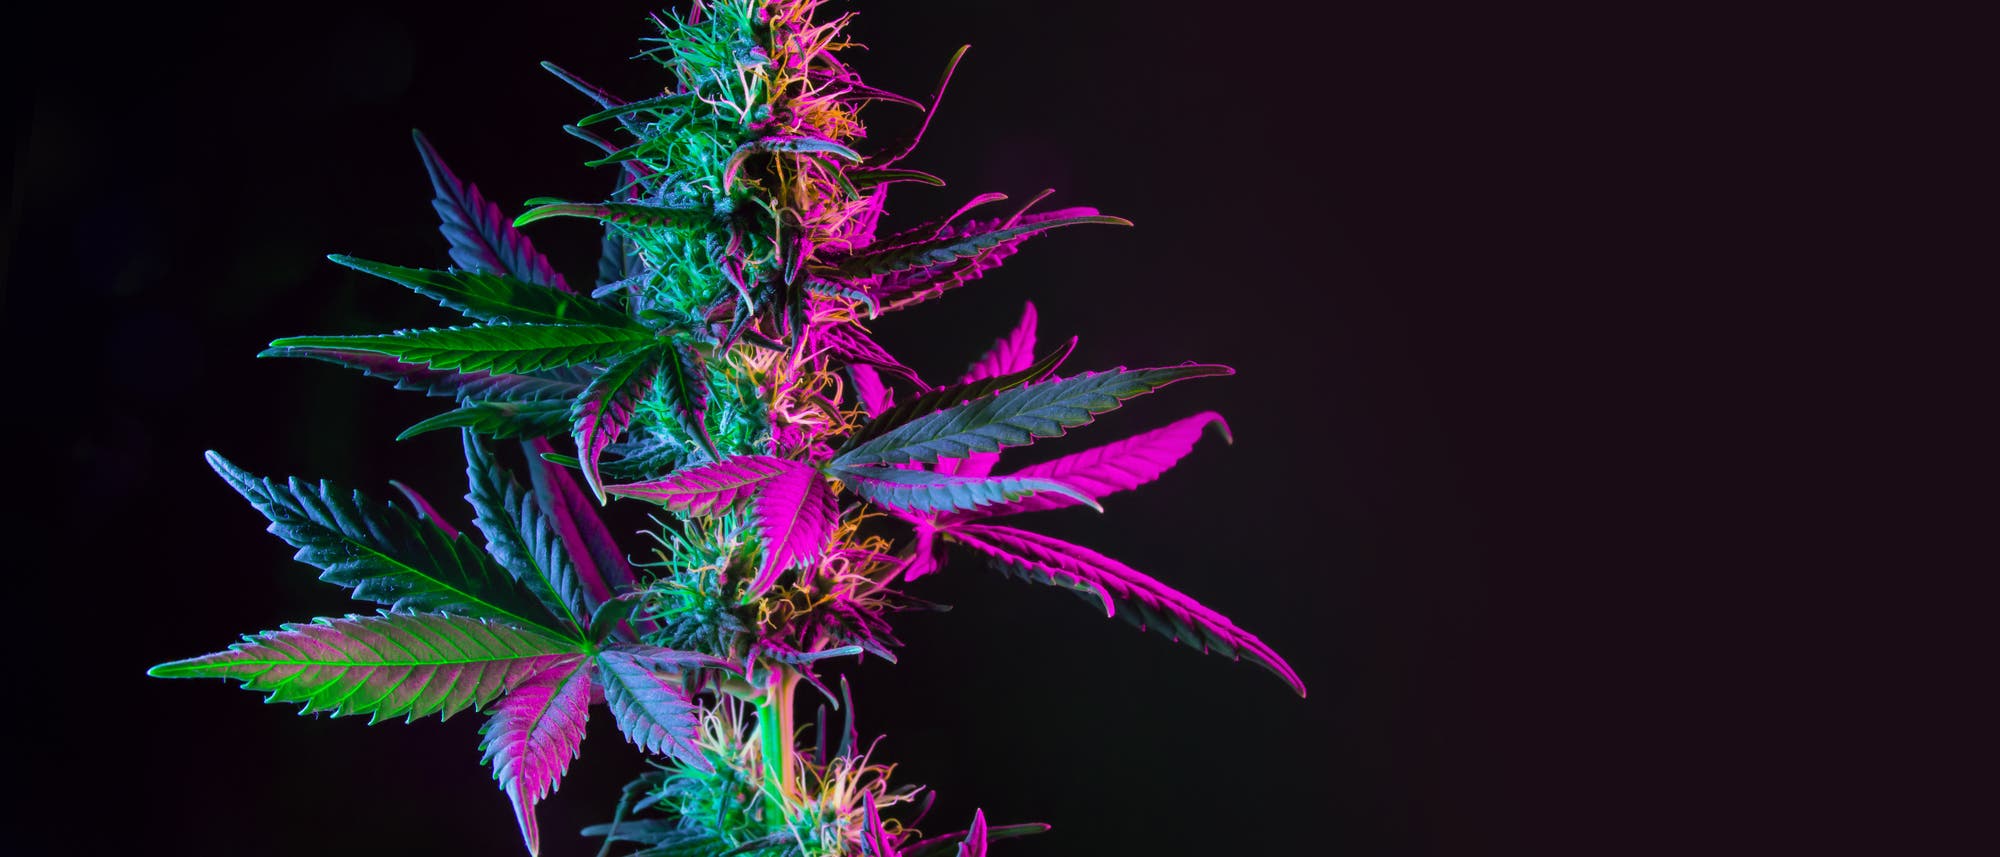 Eine bunt beleuchtete Cannabis-Pflanze